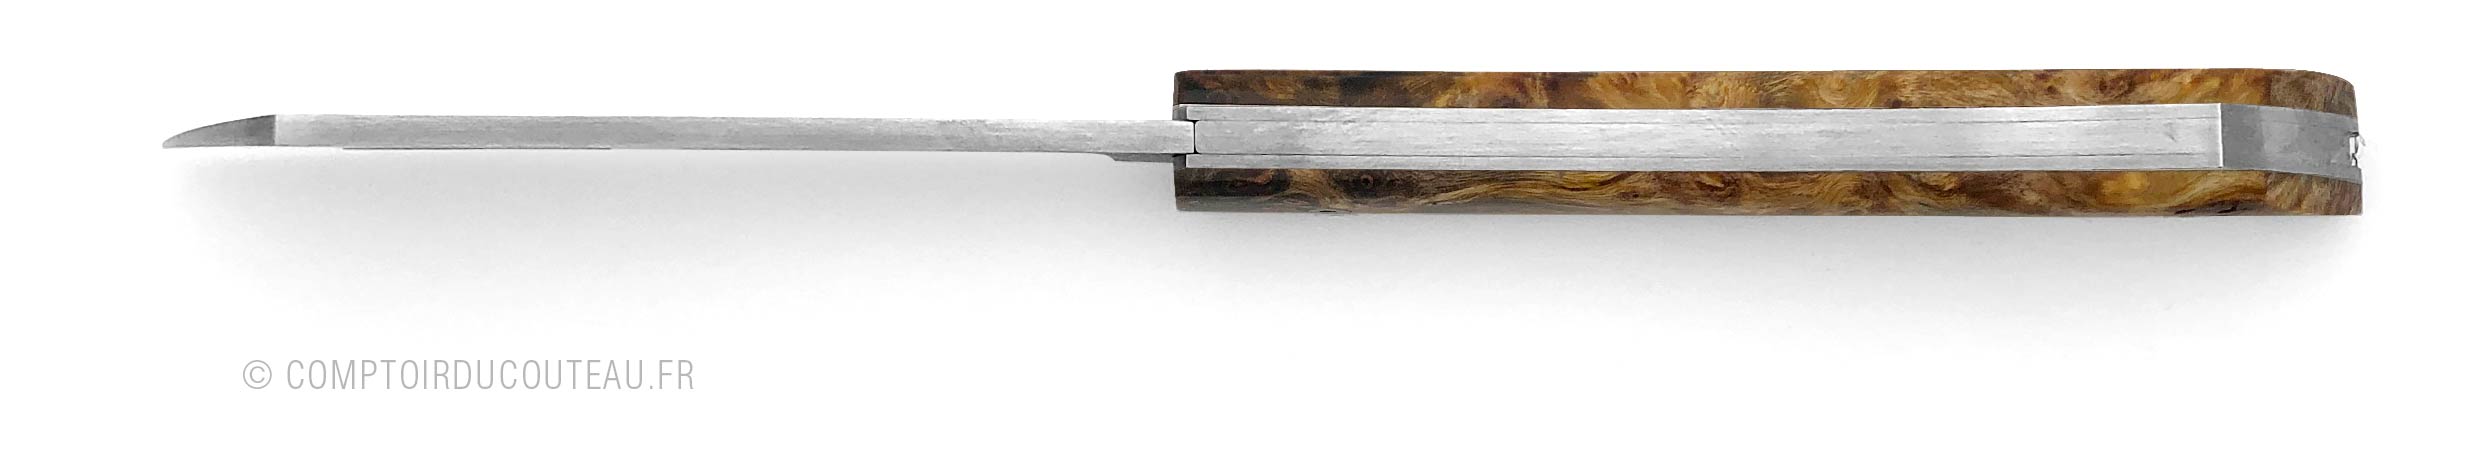 couteau de poche artisanal arca andrea bois de peuplier vue dessus